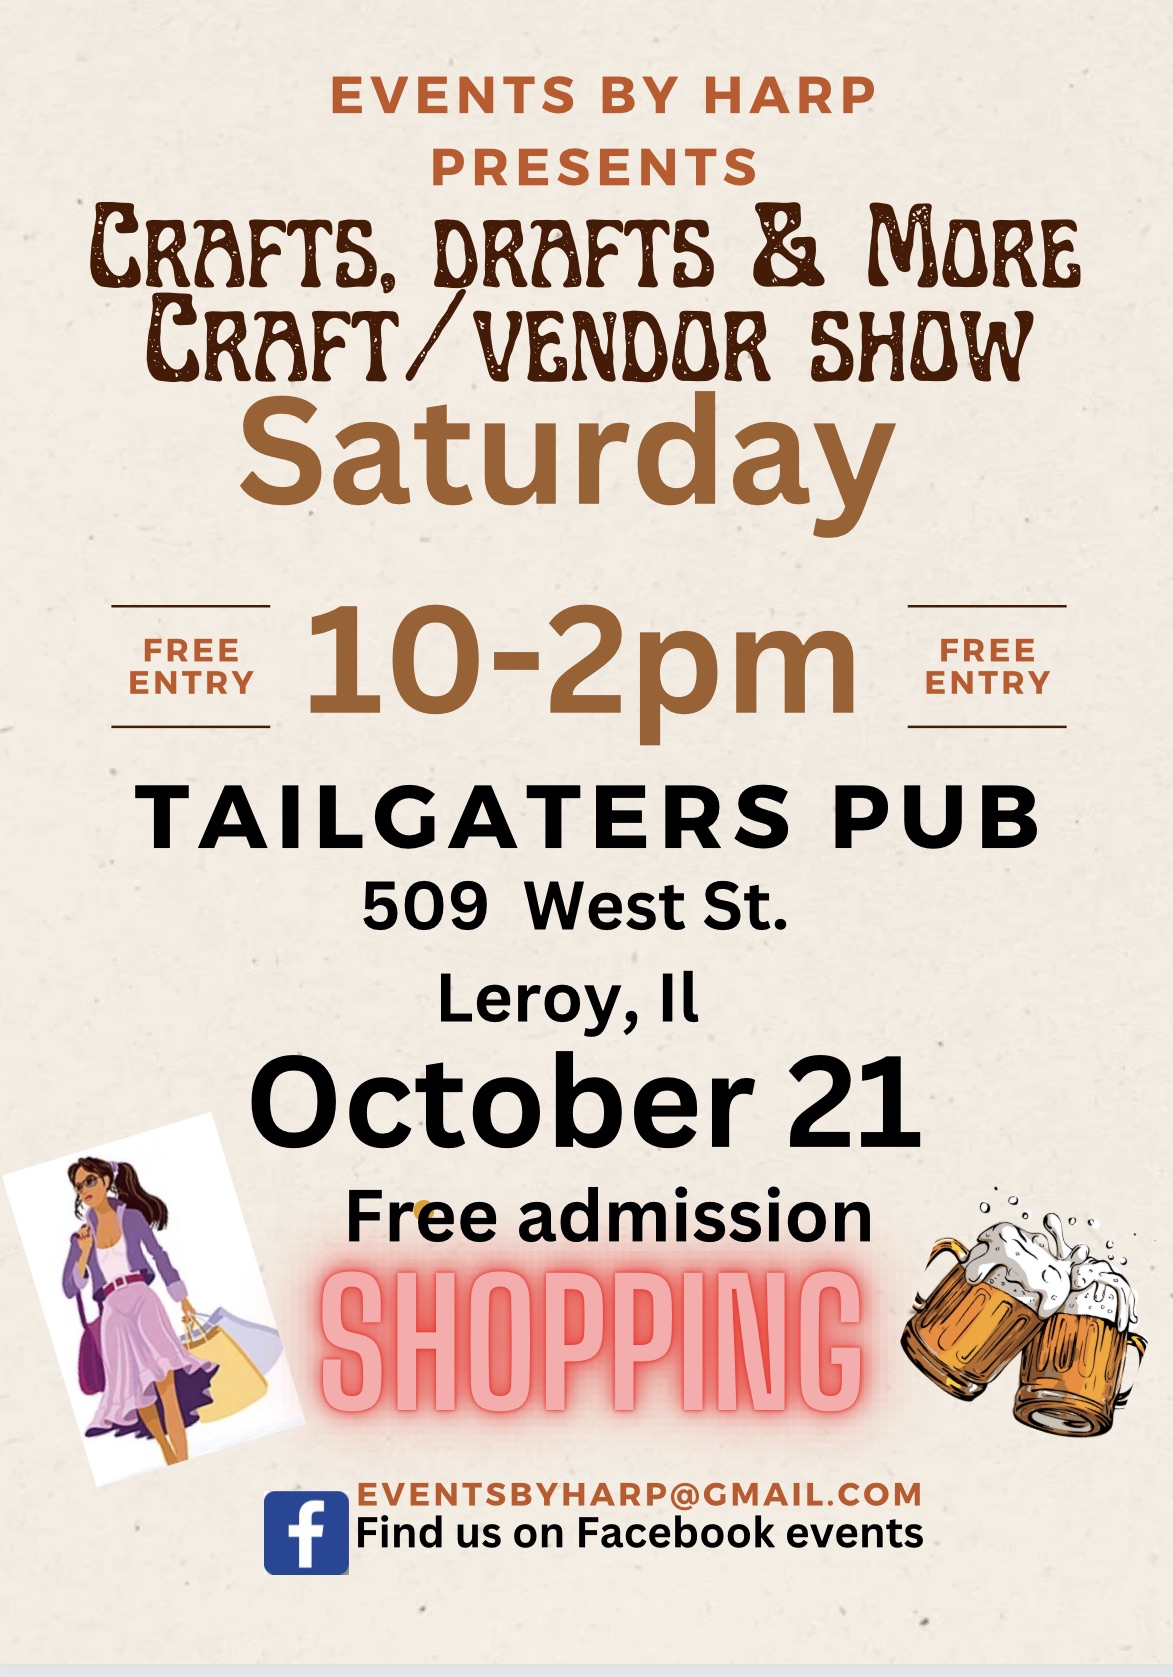 Crafts, Drafts & More Craft/Vendor Show